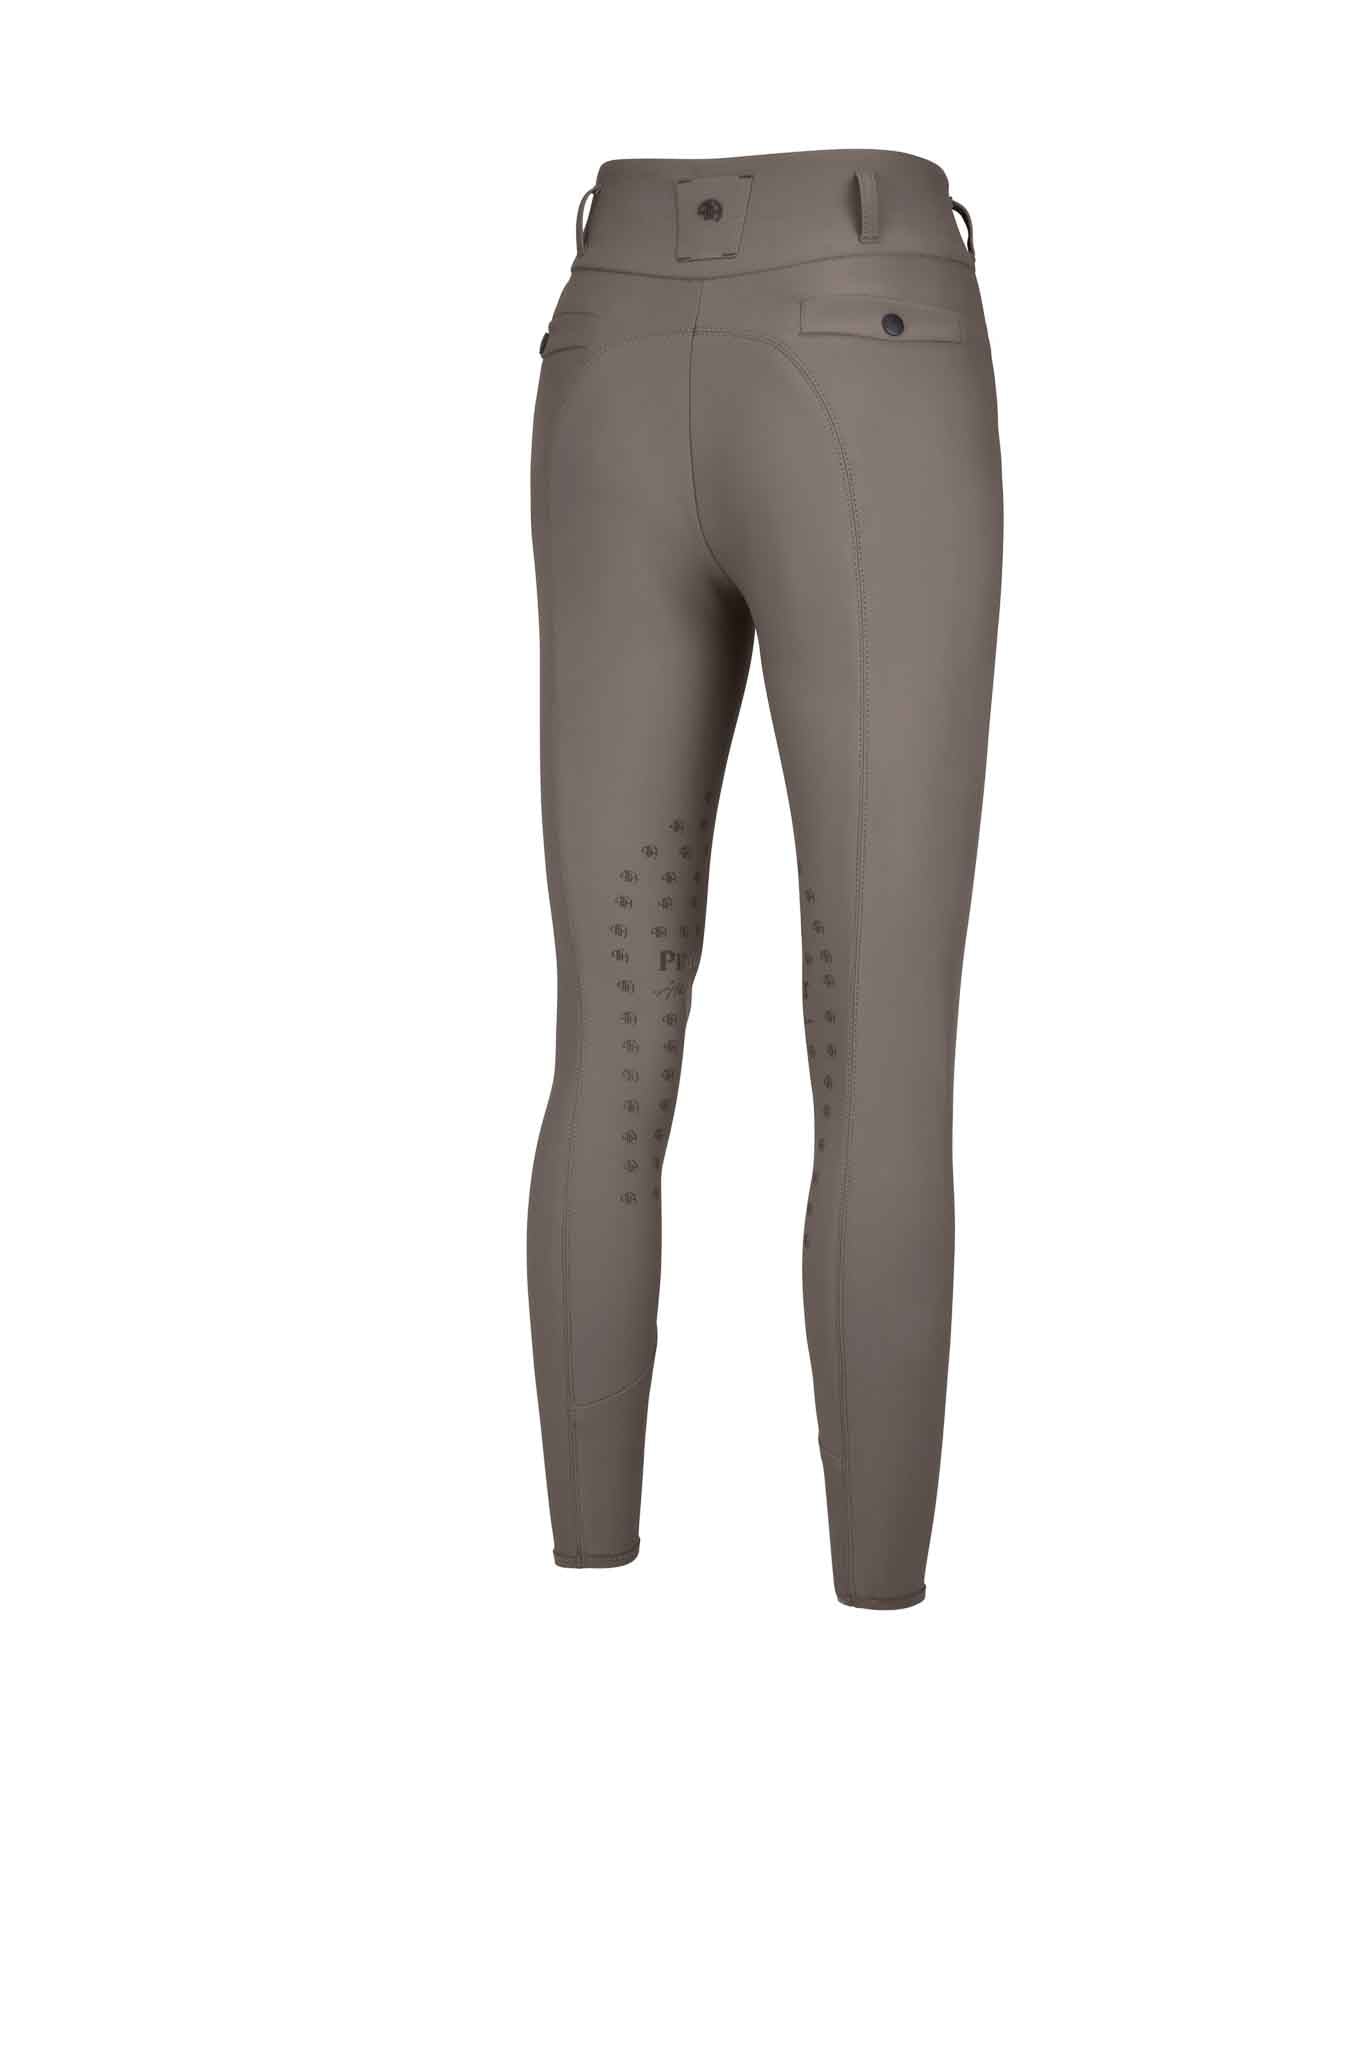 Pantalon genoux grip Highwaist, Taupe - Pikeur AH 2023